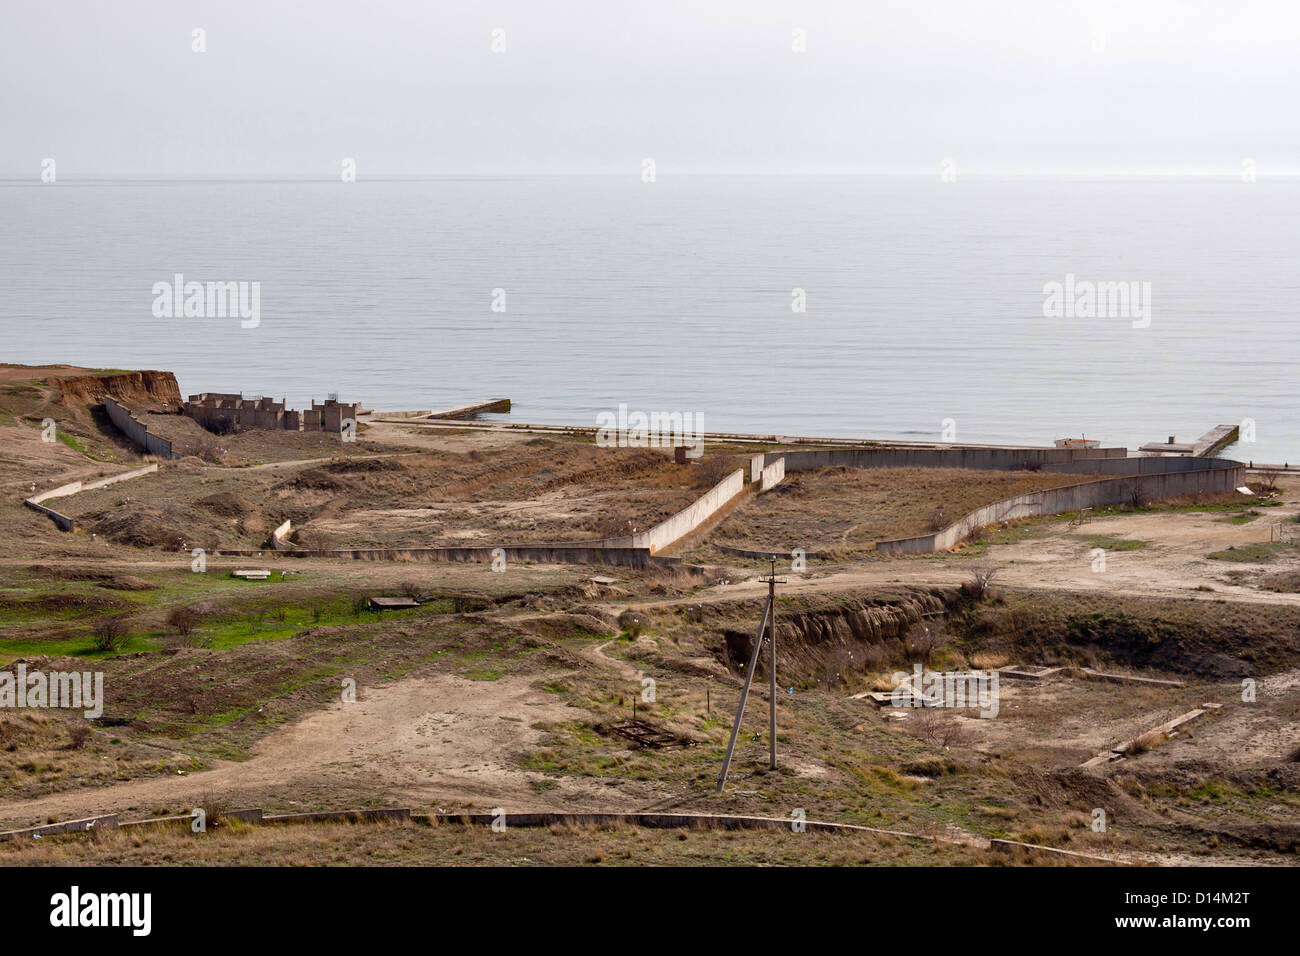 Remains of Soviet unfinished abandoned military navy base. Crimea, Ukraine. Stock Photo